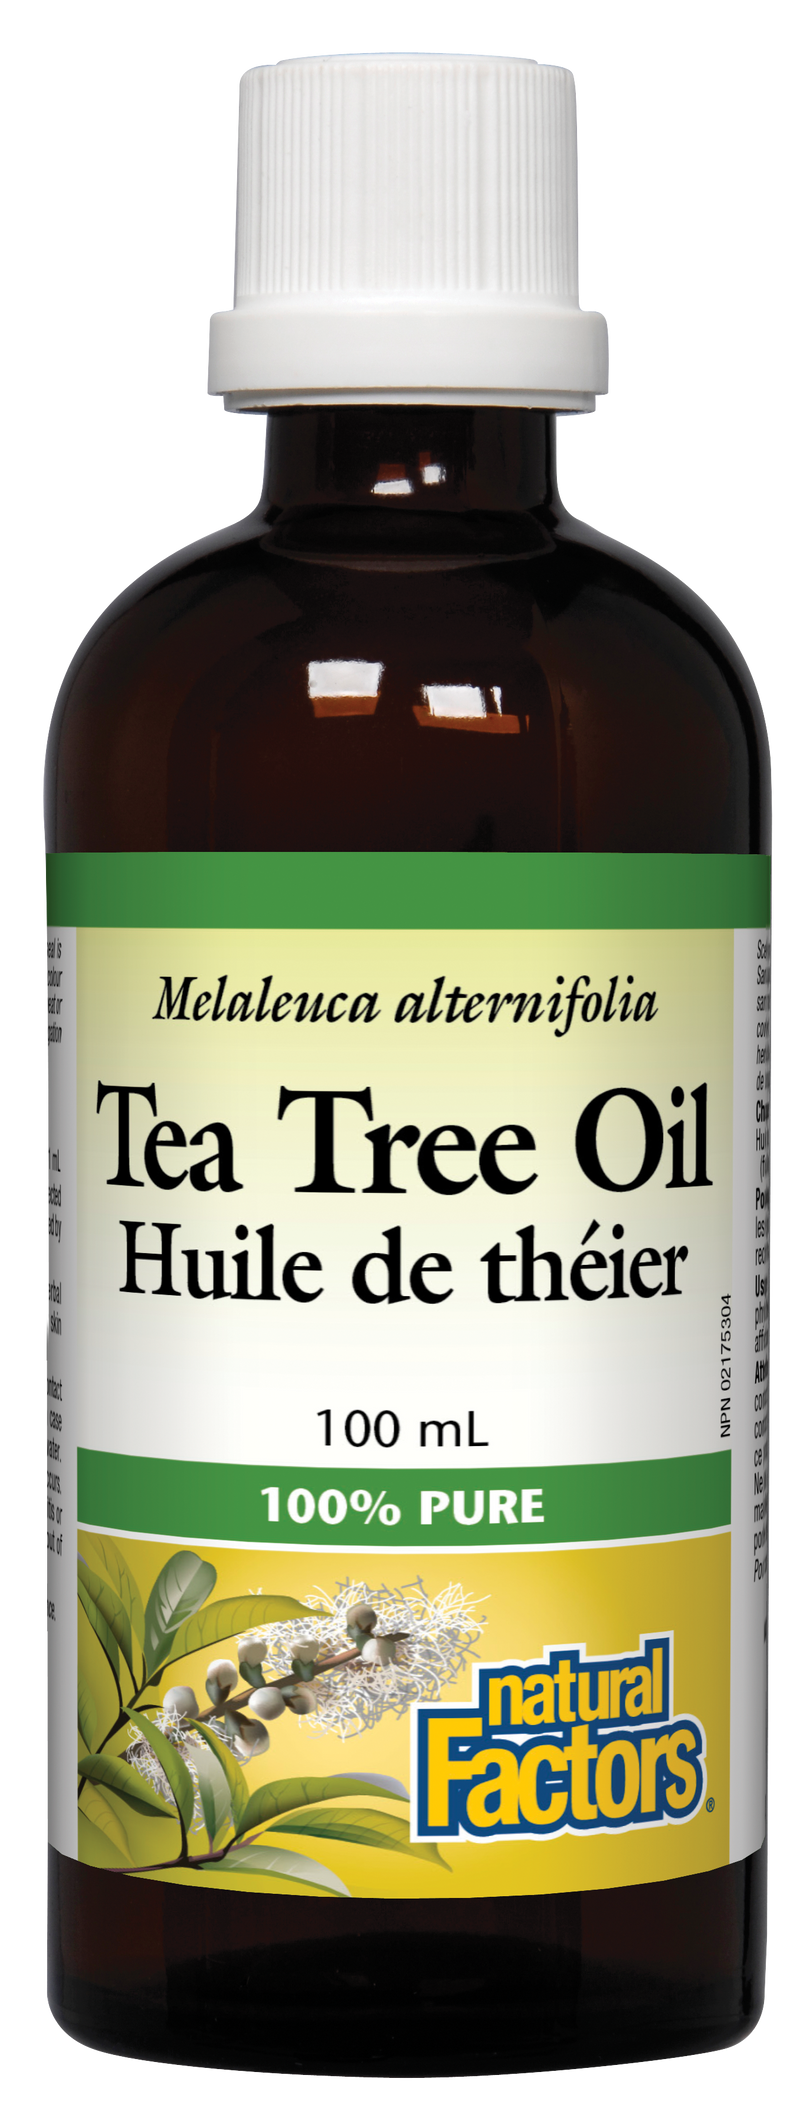 Tea Tree Oil, 100mL